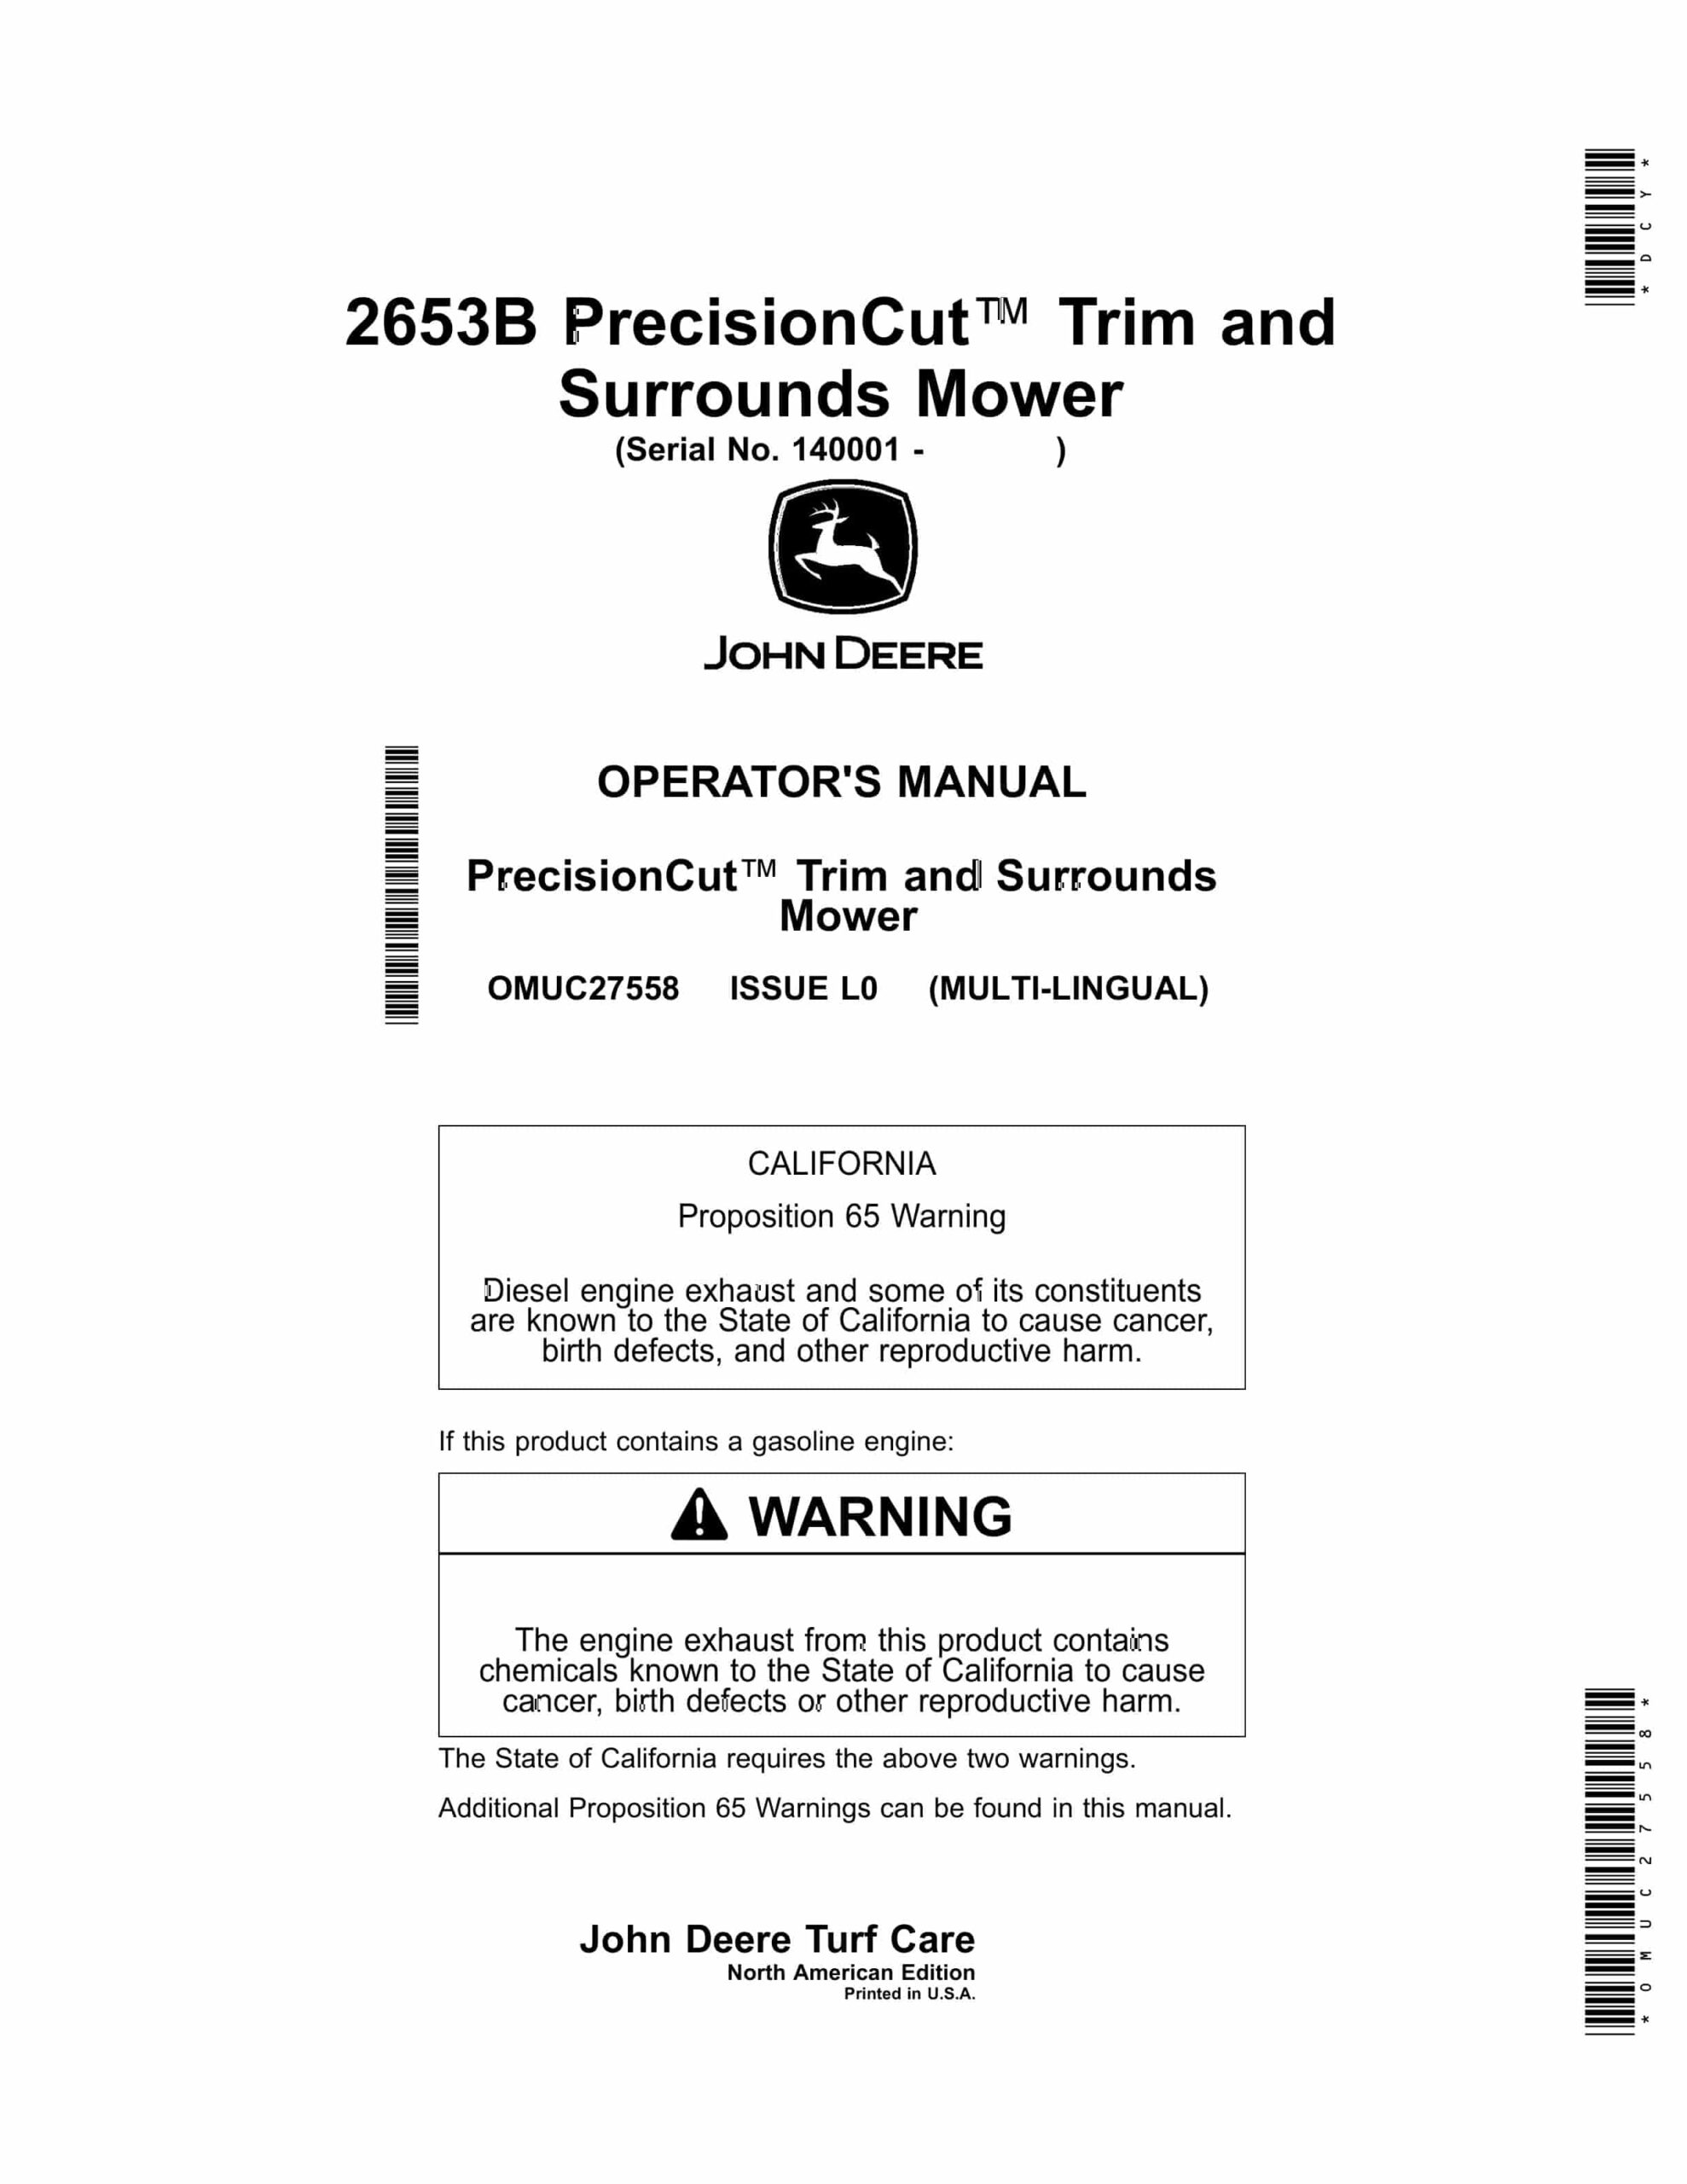 John Deere 2653B PrecisionCut Trim and Surrounds Mower (Serial No. 140001 Operator Manual OMUC27558-1